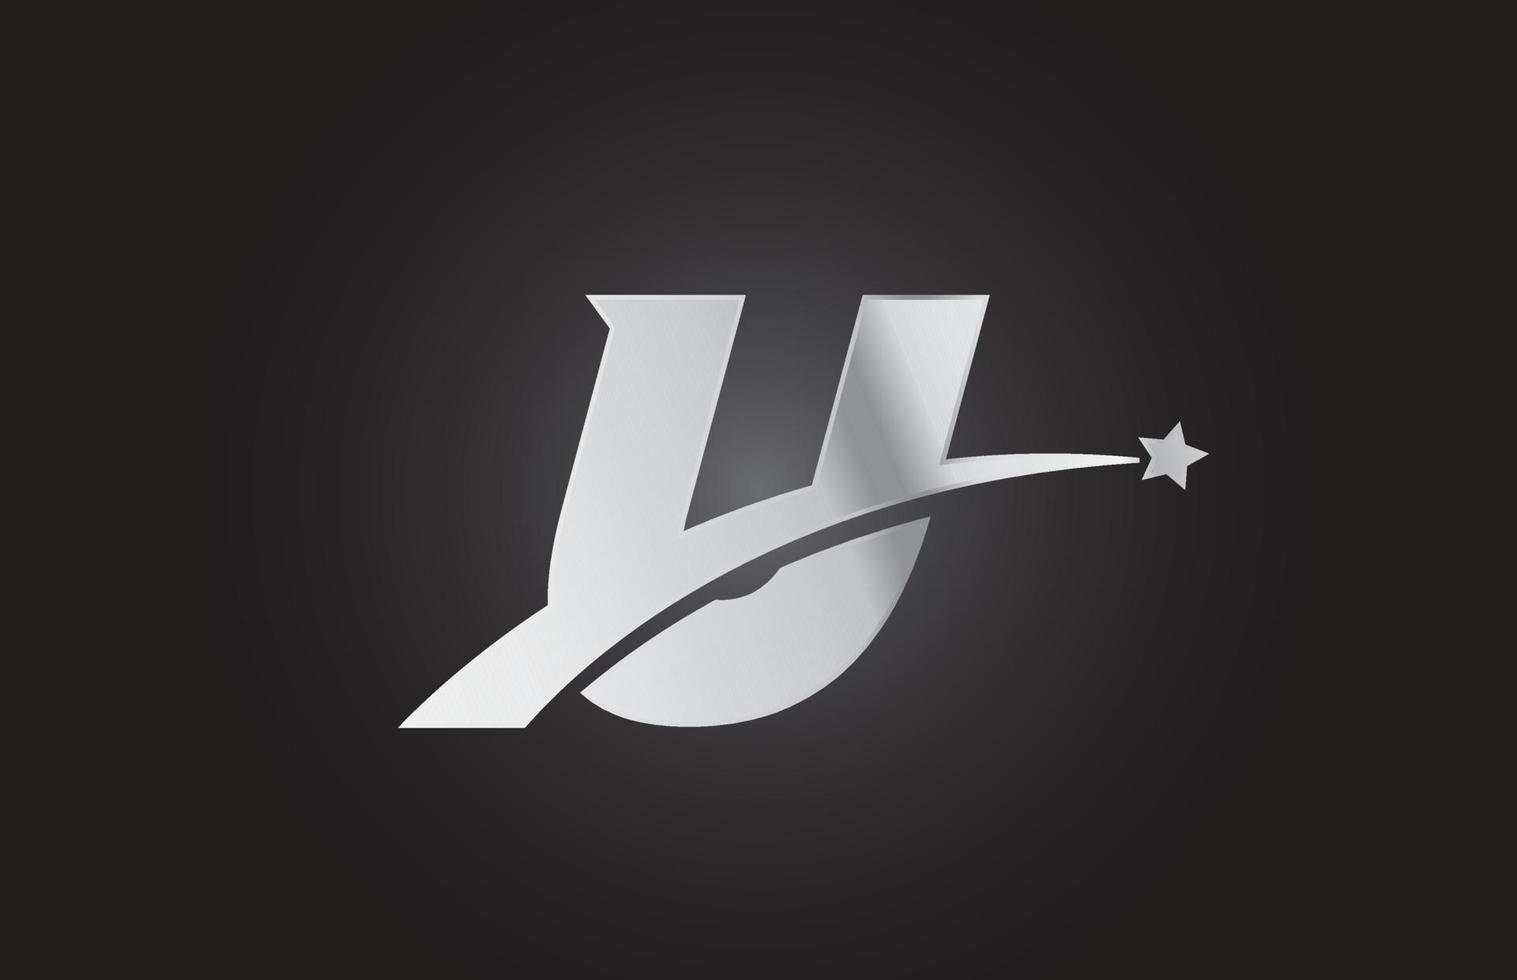 Silbermetall u-Alphabet-Buchstaben-Logo-Symbol mit Stern. kreatives Design für Unternehmen oder Unternehmen vektor